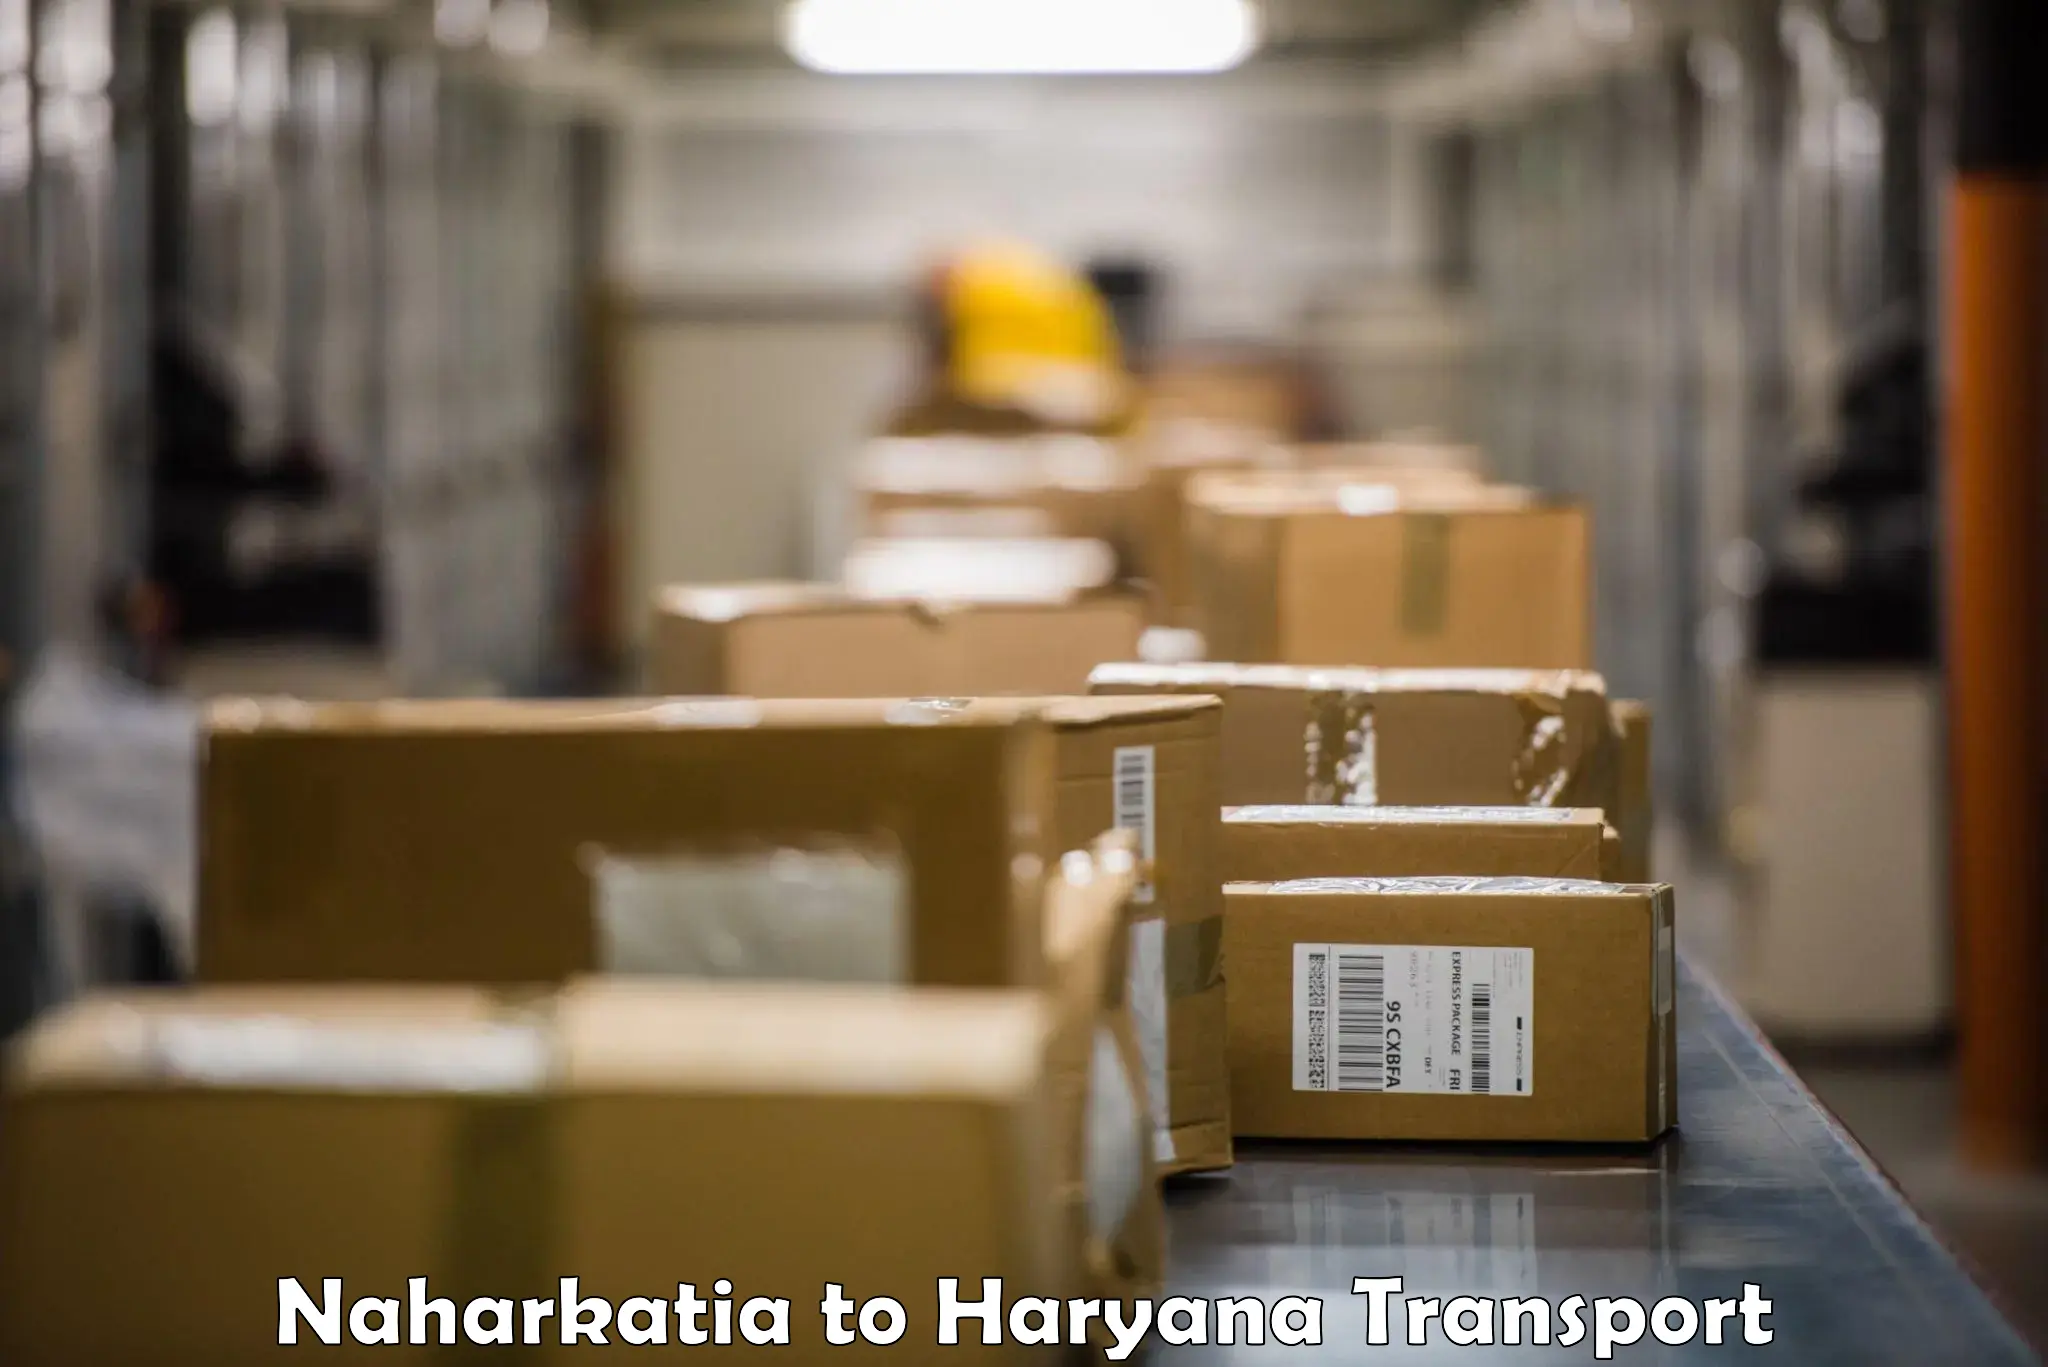 Daily transport service Naharkatia to Nuh